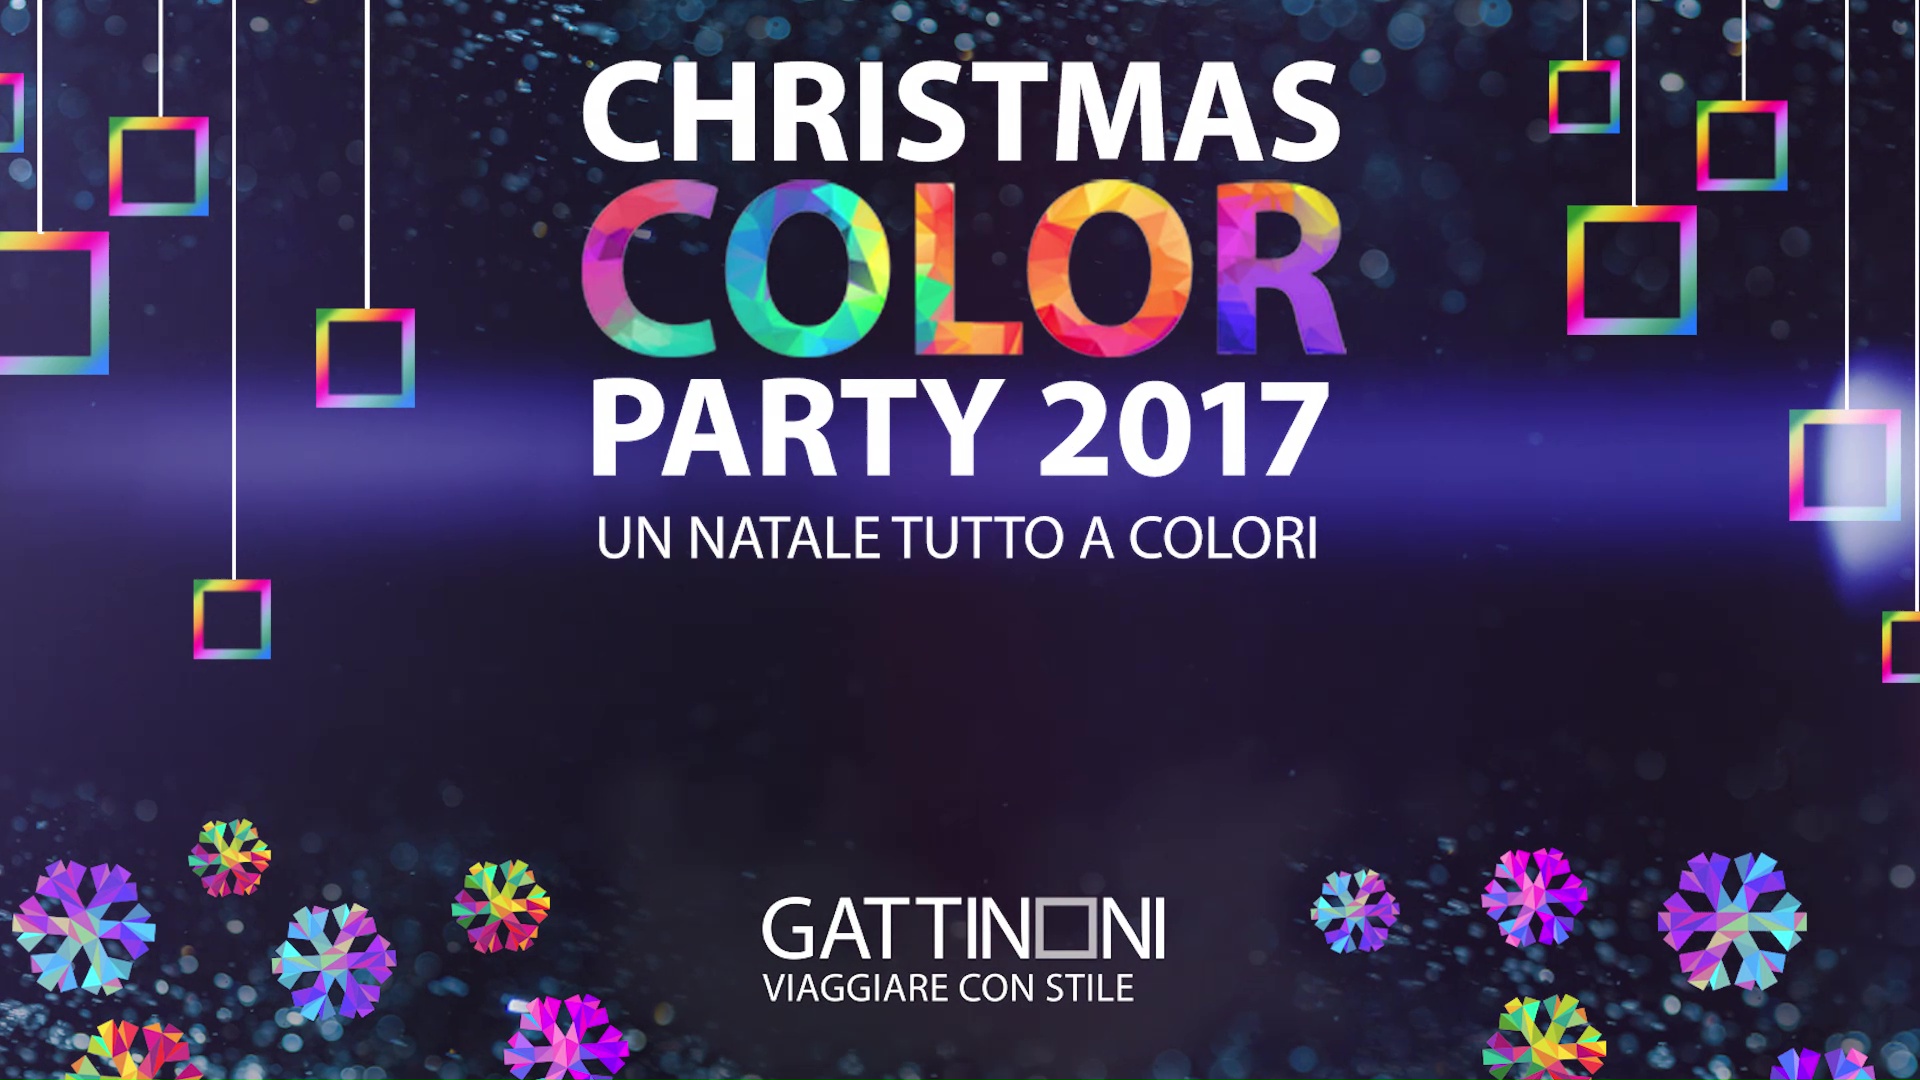 Christmas Color Party # Milano 12.2017 per Gattinoni Travel Network